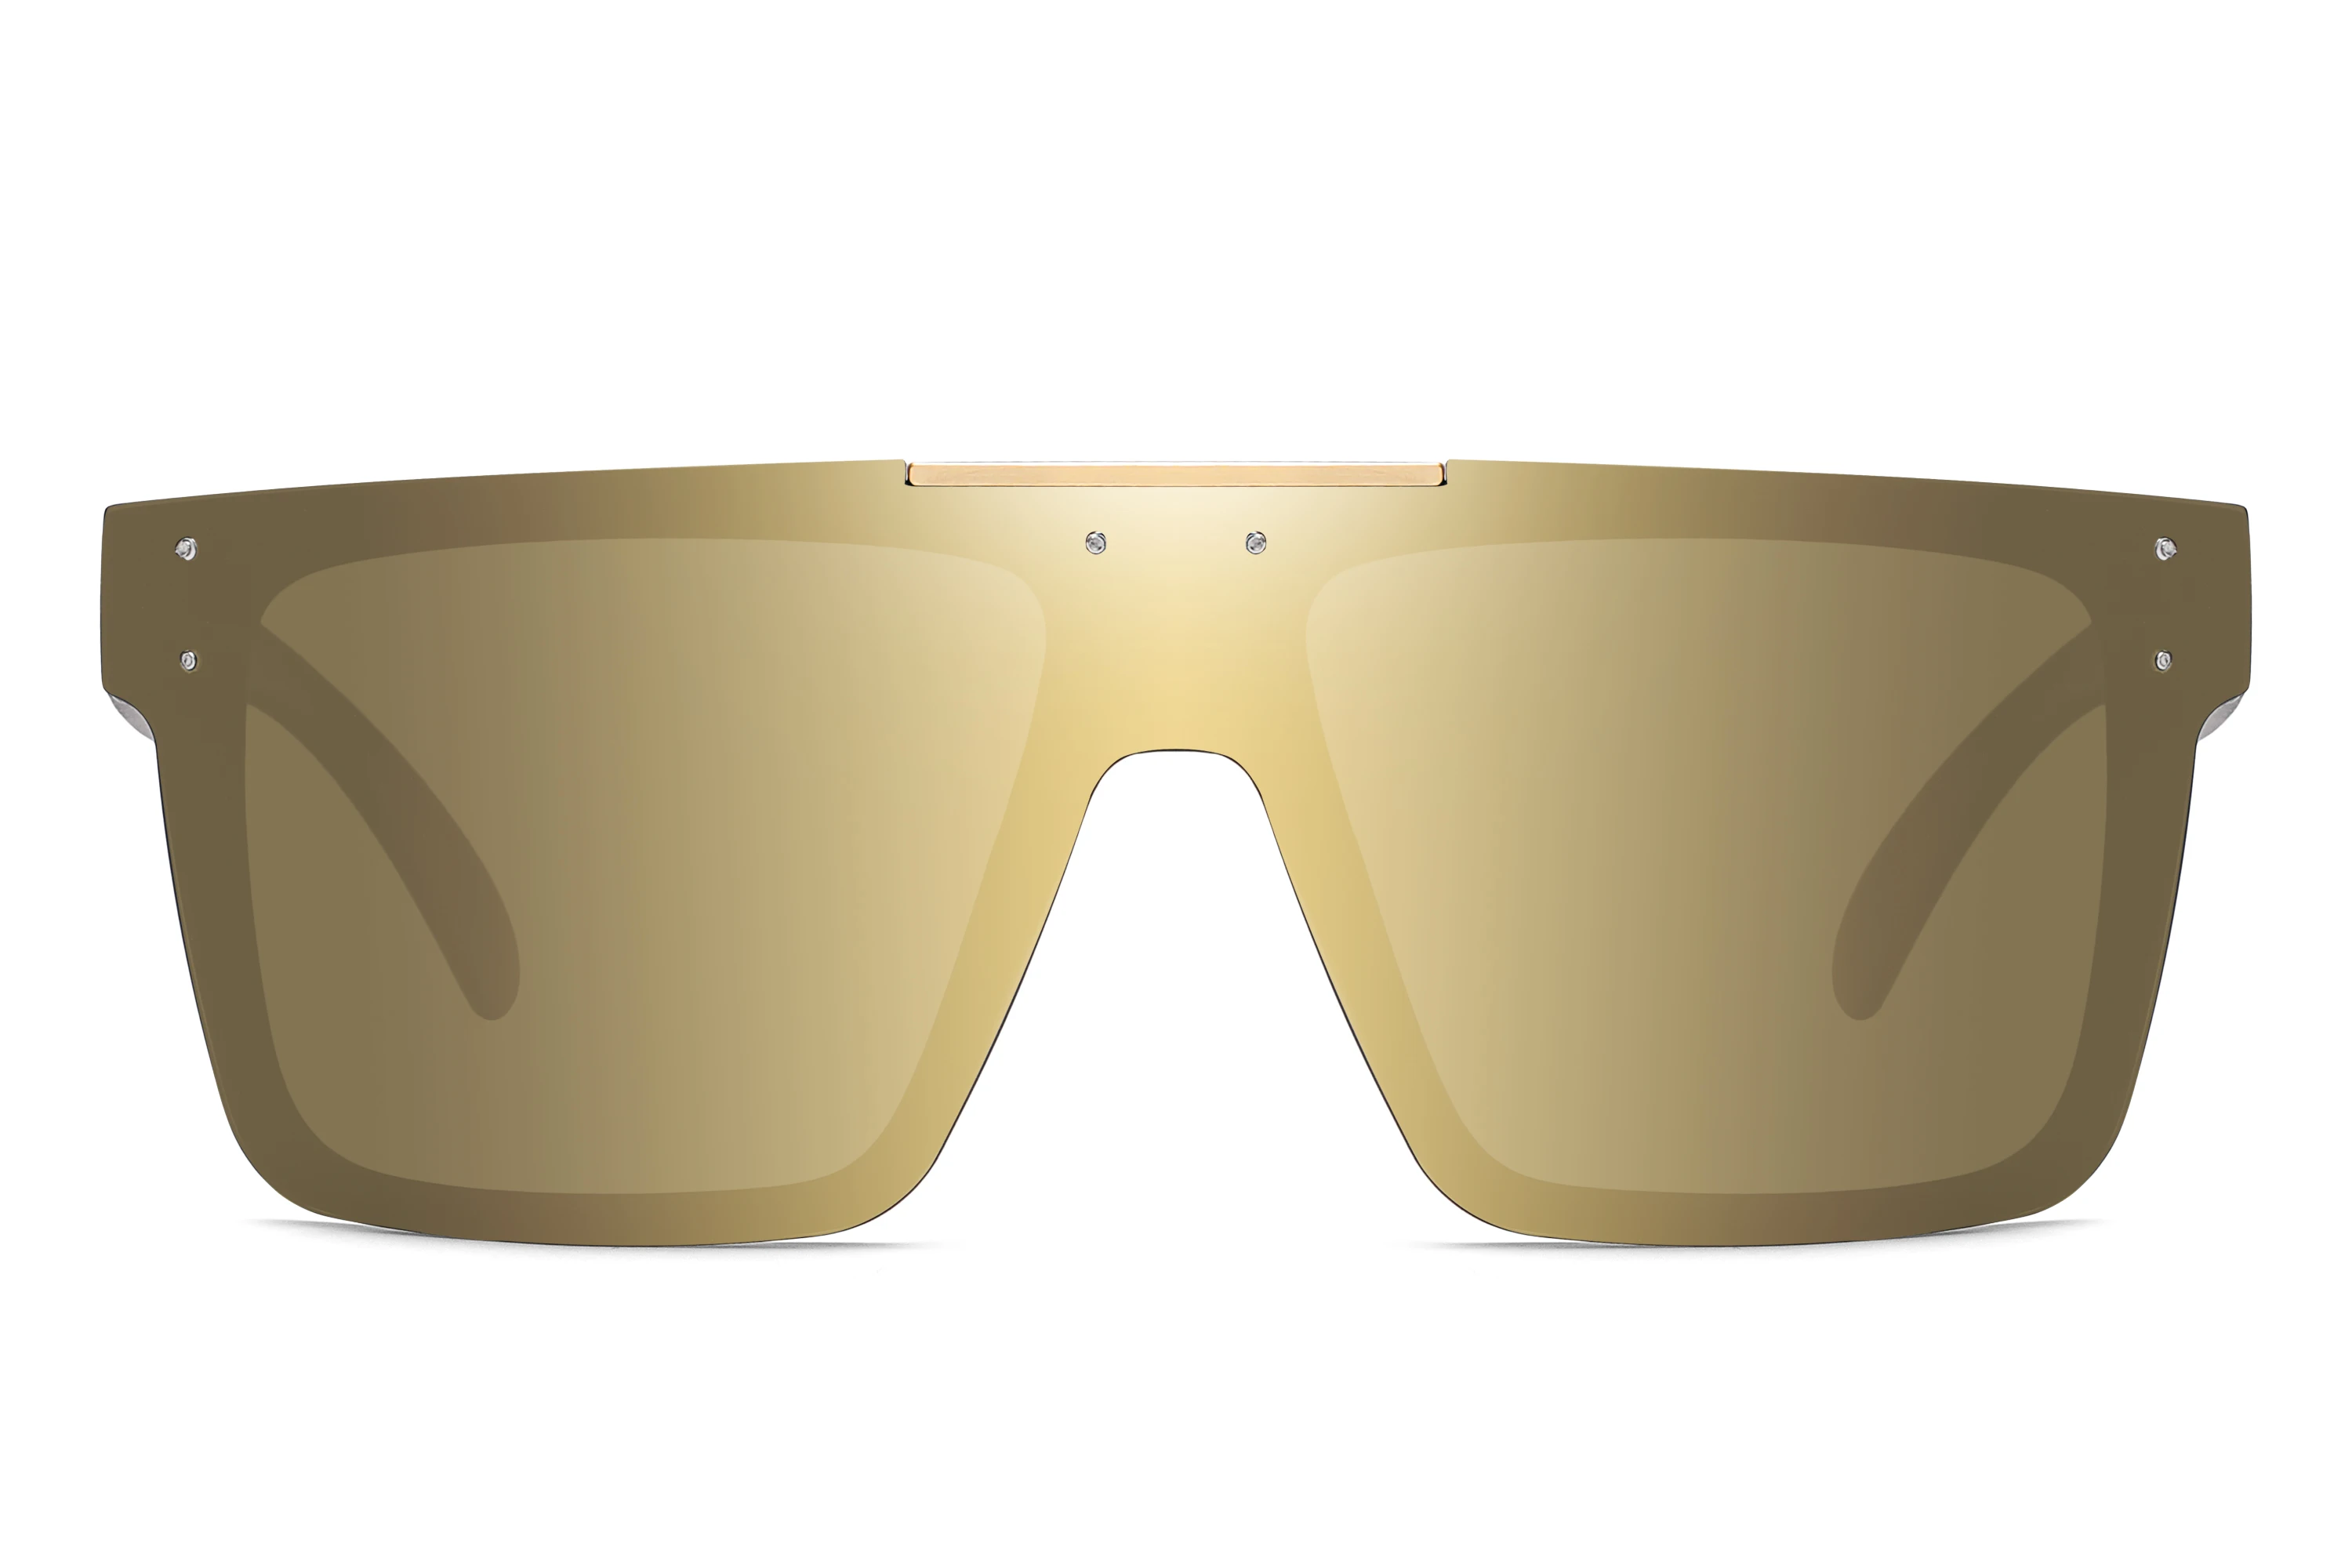 square sunglasses 2021 brand new Heat Wave brand design classic men's fashion polarized sunglasses men's glasses oculos de sol women's sunglasses